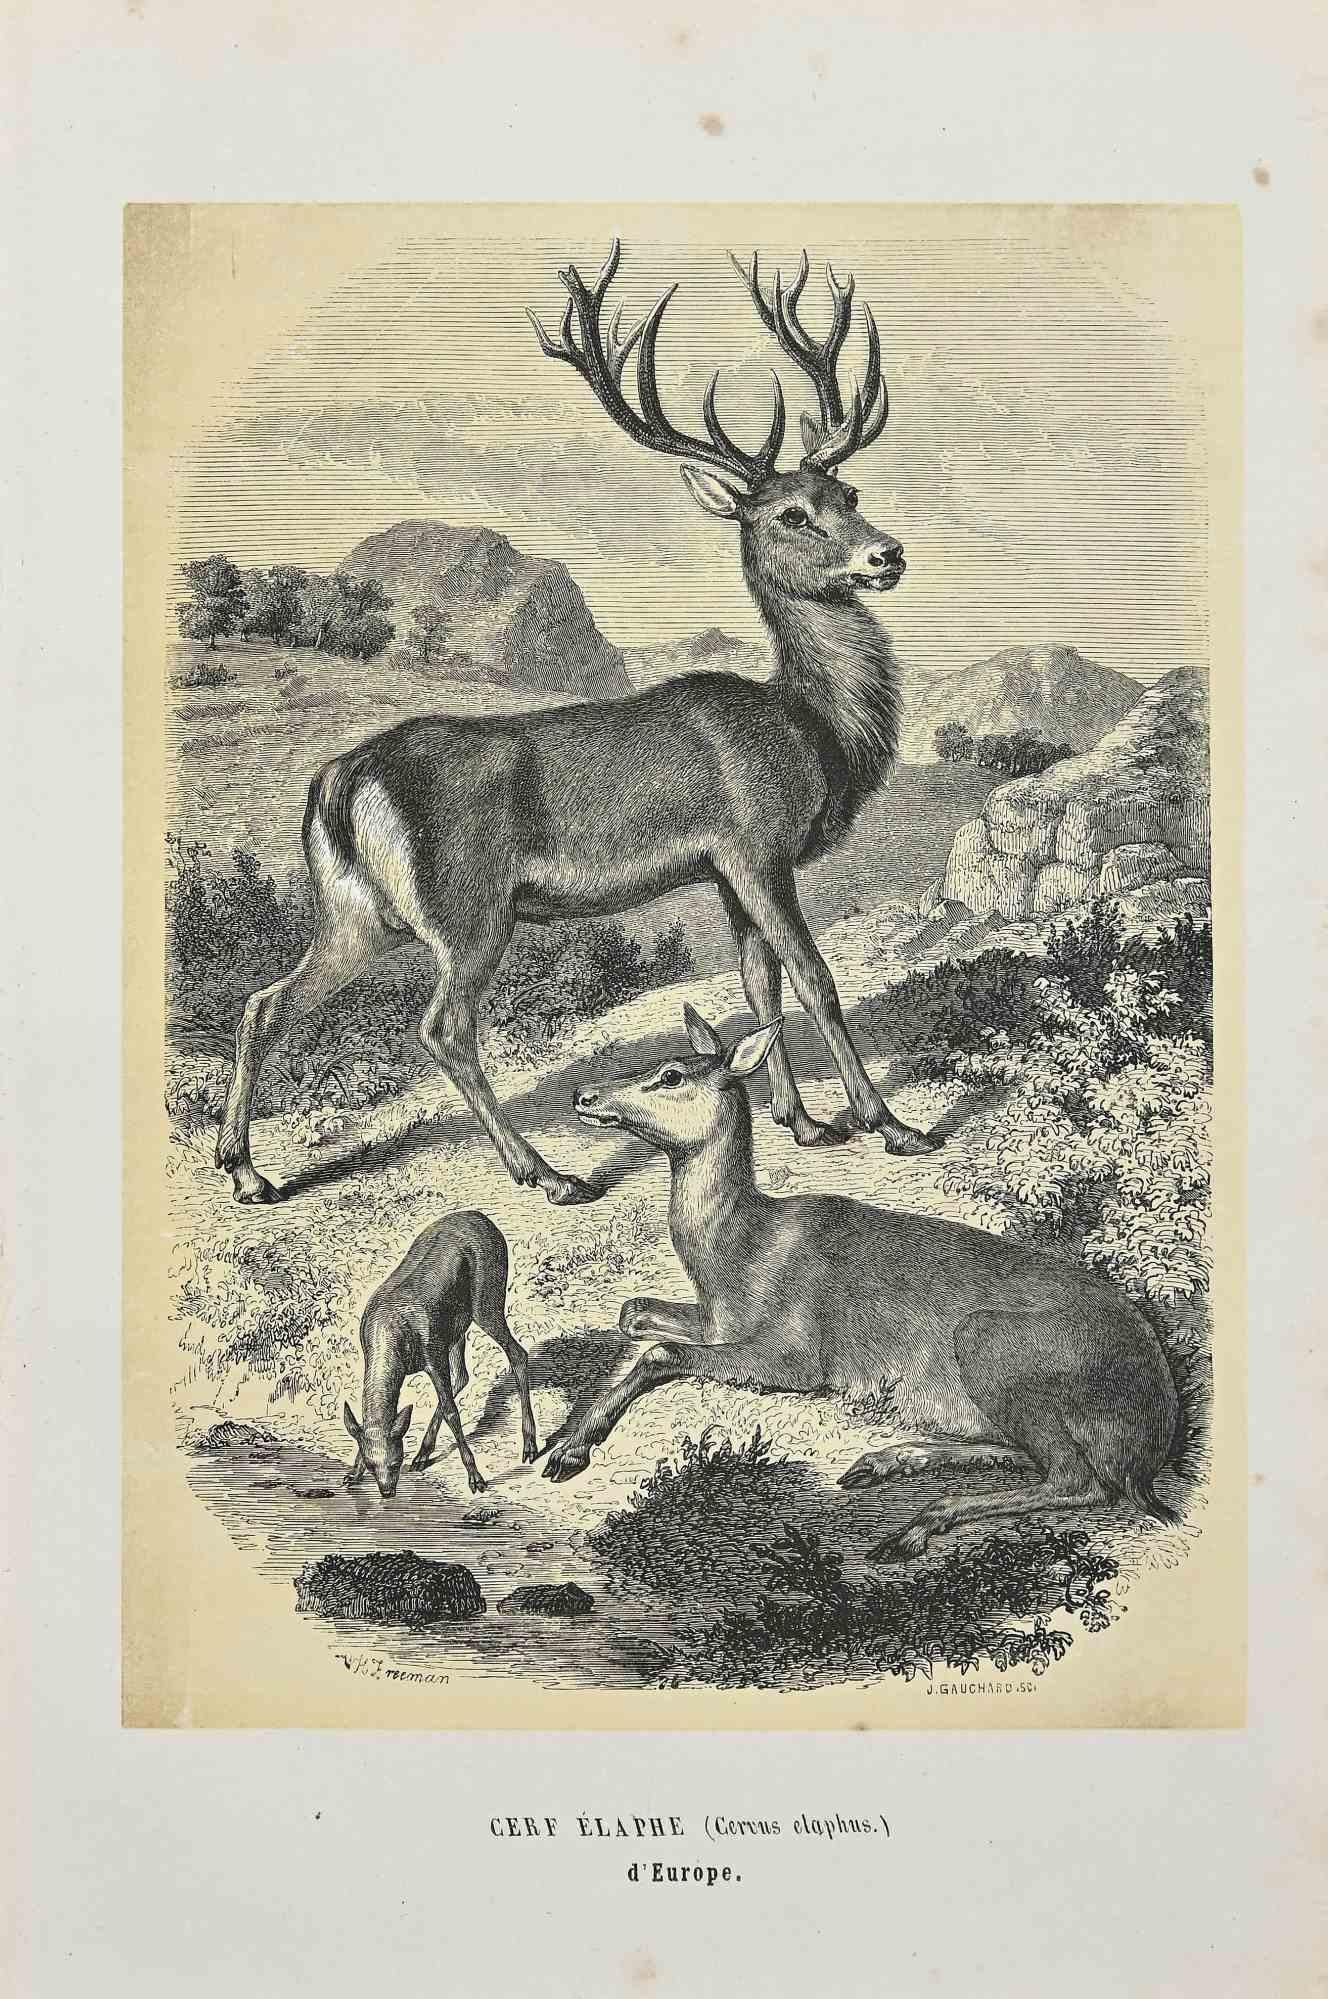 Rothirsch  ist eine Originallithografie auf elfenbeinfarbenem Papier, die von Paul Gervais (1816-1879) geschaffen wurde. Das Kunstwerk stammt aus der Serie "Les Trois Règnes de la Nature" und wurde 1854 veröffentlicht.

Guter Zustand bis auf einige